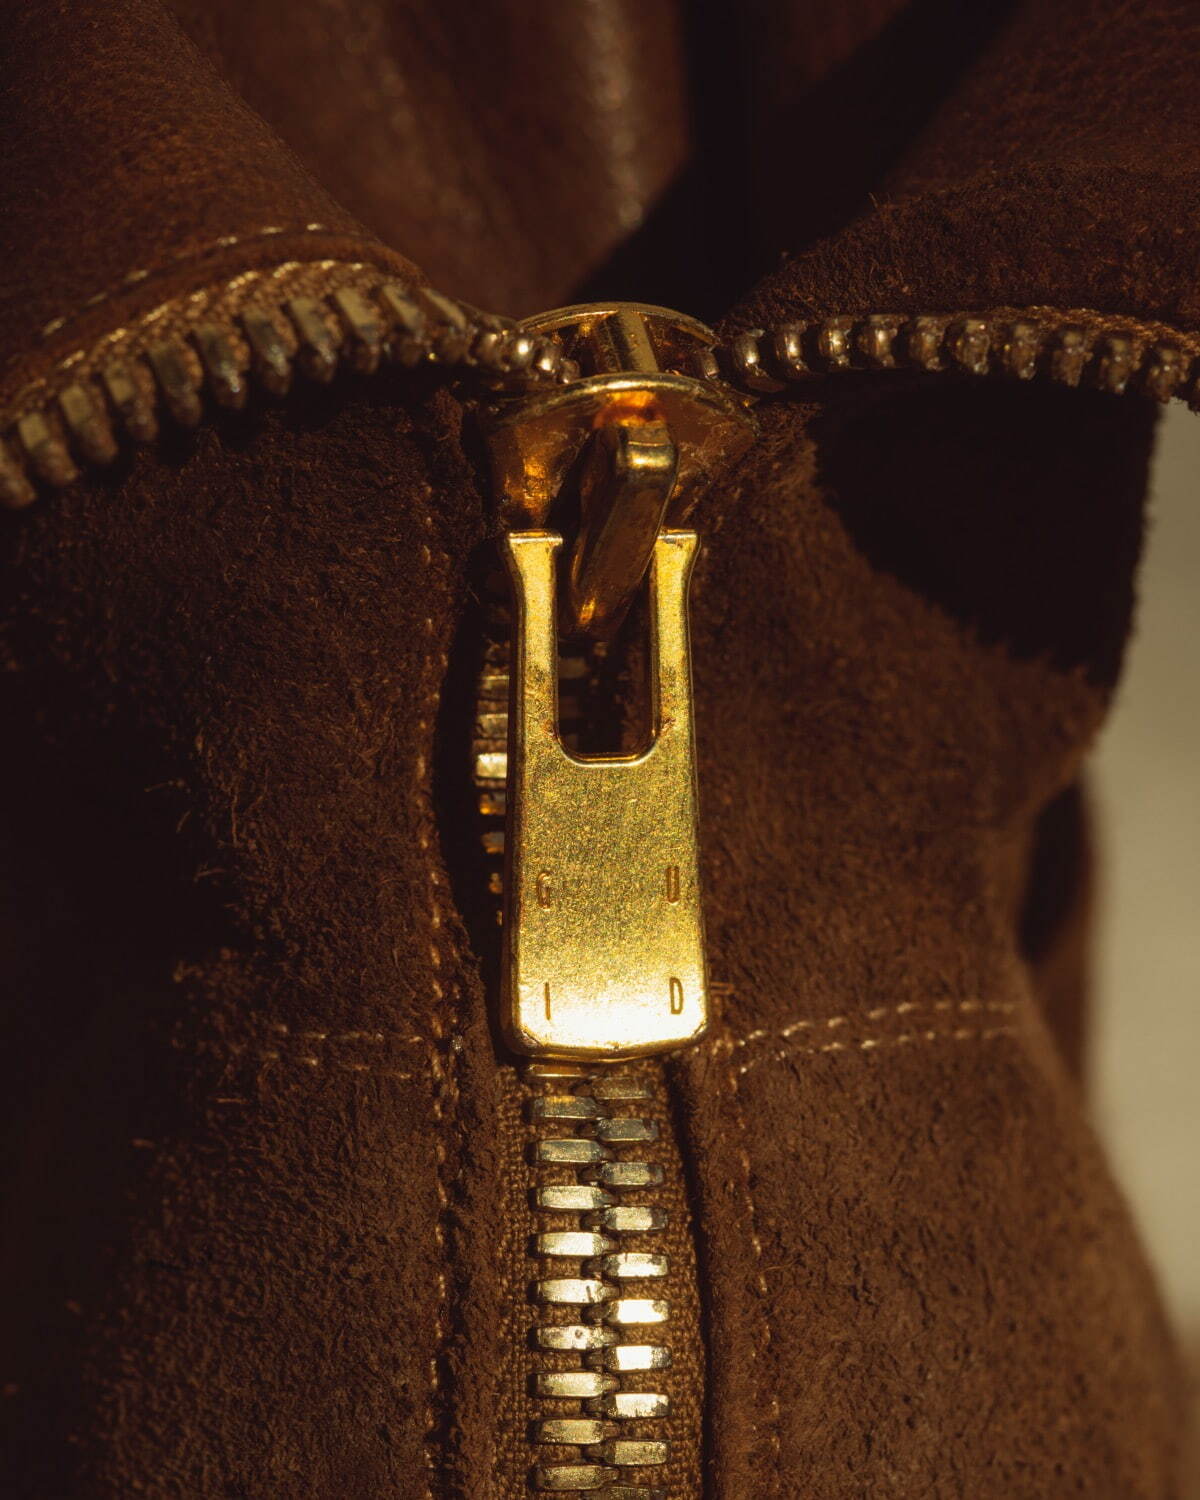 以質感著稱的義大利皮革配飾品牌 GUIDI，憑藉遵循傳統工法製造而聞名，亦時常提供皮料給眾多奢侈時裝屋們，是在時尚圈內最著名的存在。近期，GUIDI 便攜手日本時裝品牌 UNDERCOVER 推出全新男士靴款。